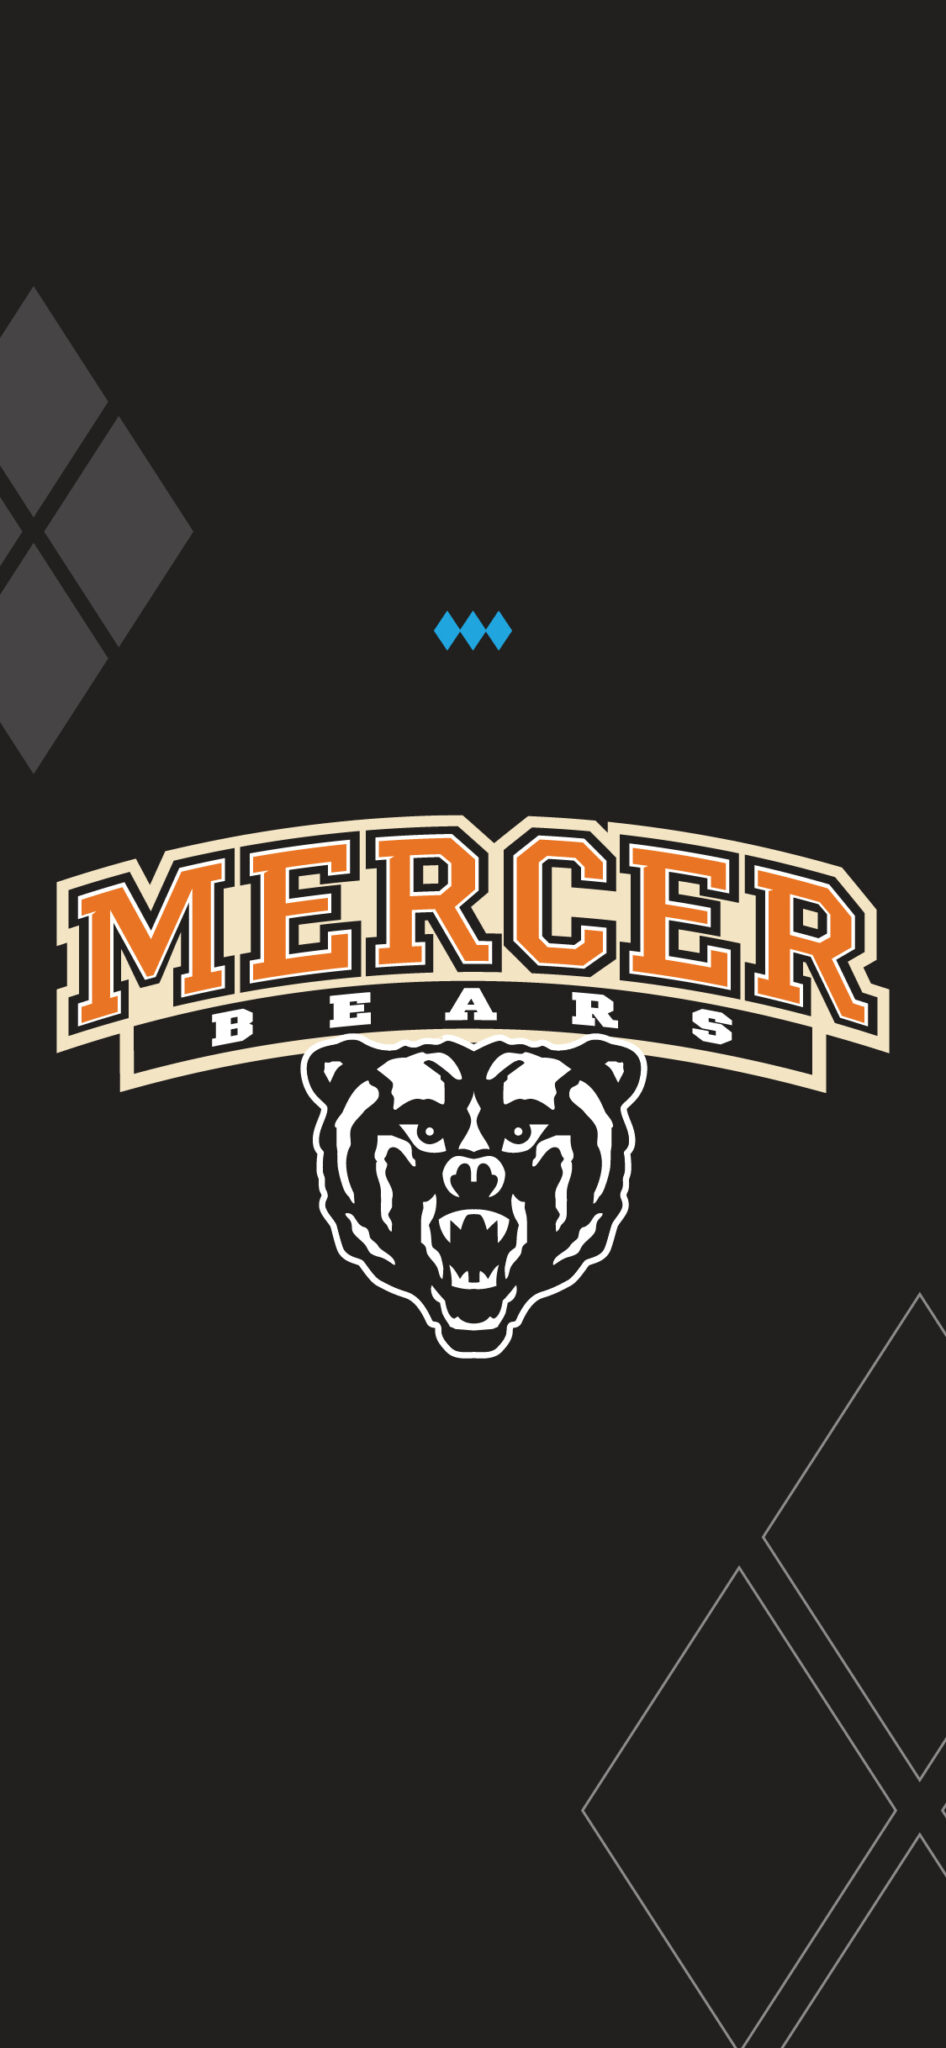 Mercer Bears Mobile Wallpaper